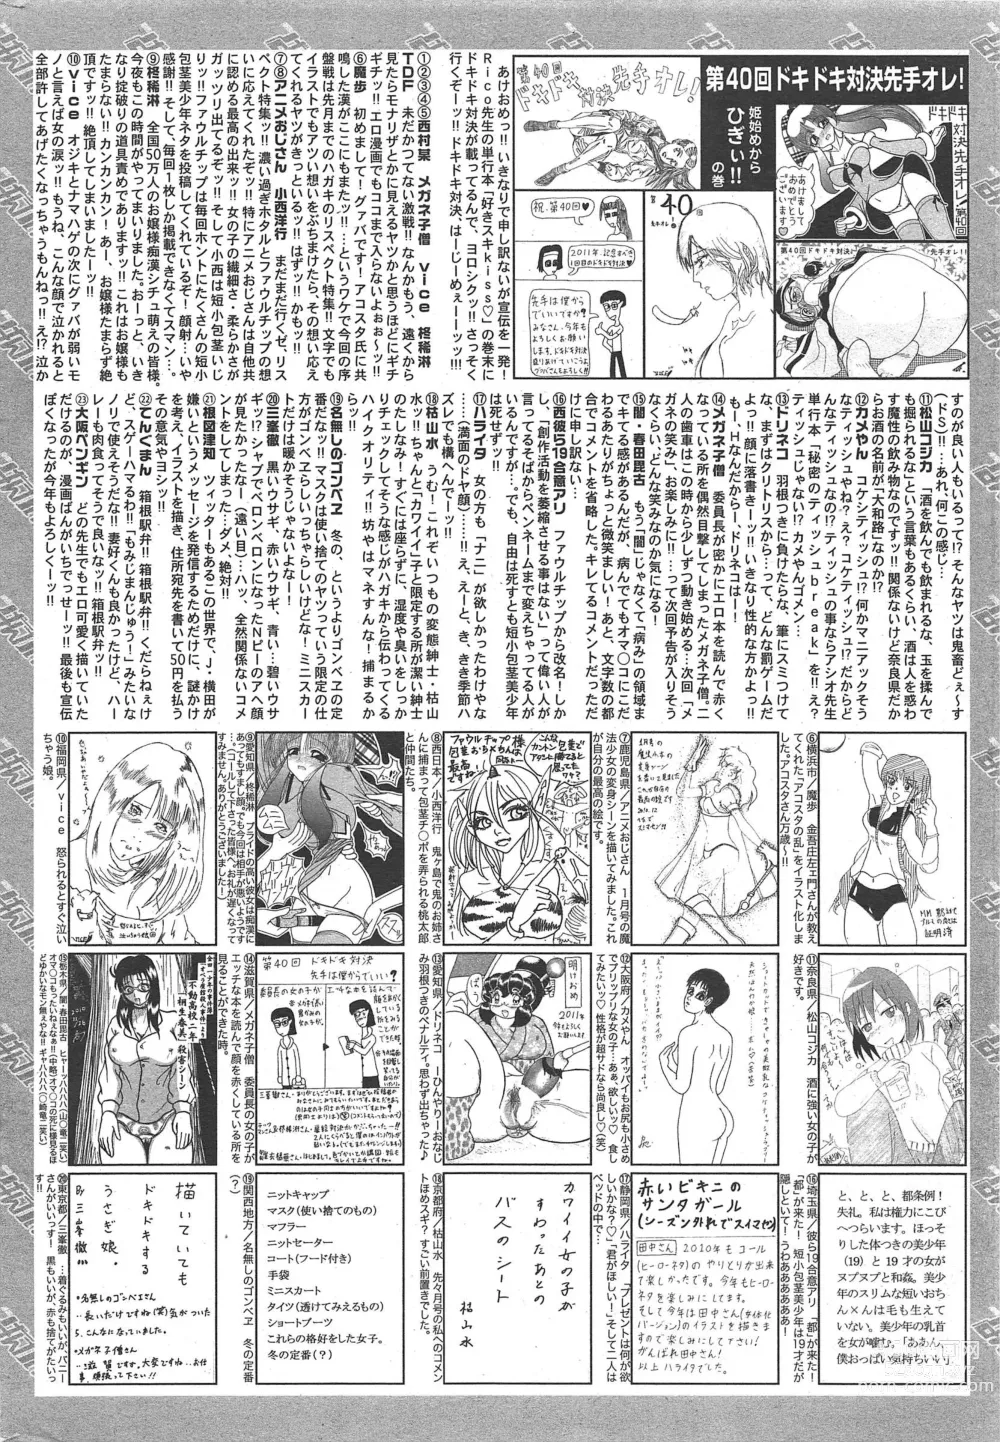 Page 260 of manga Manga Bangaichi 2011-03